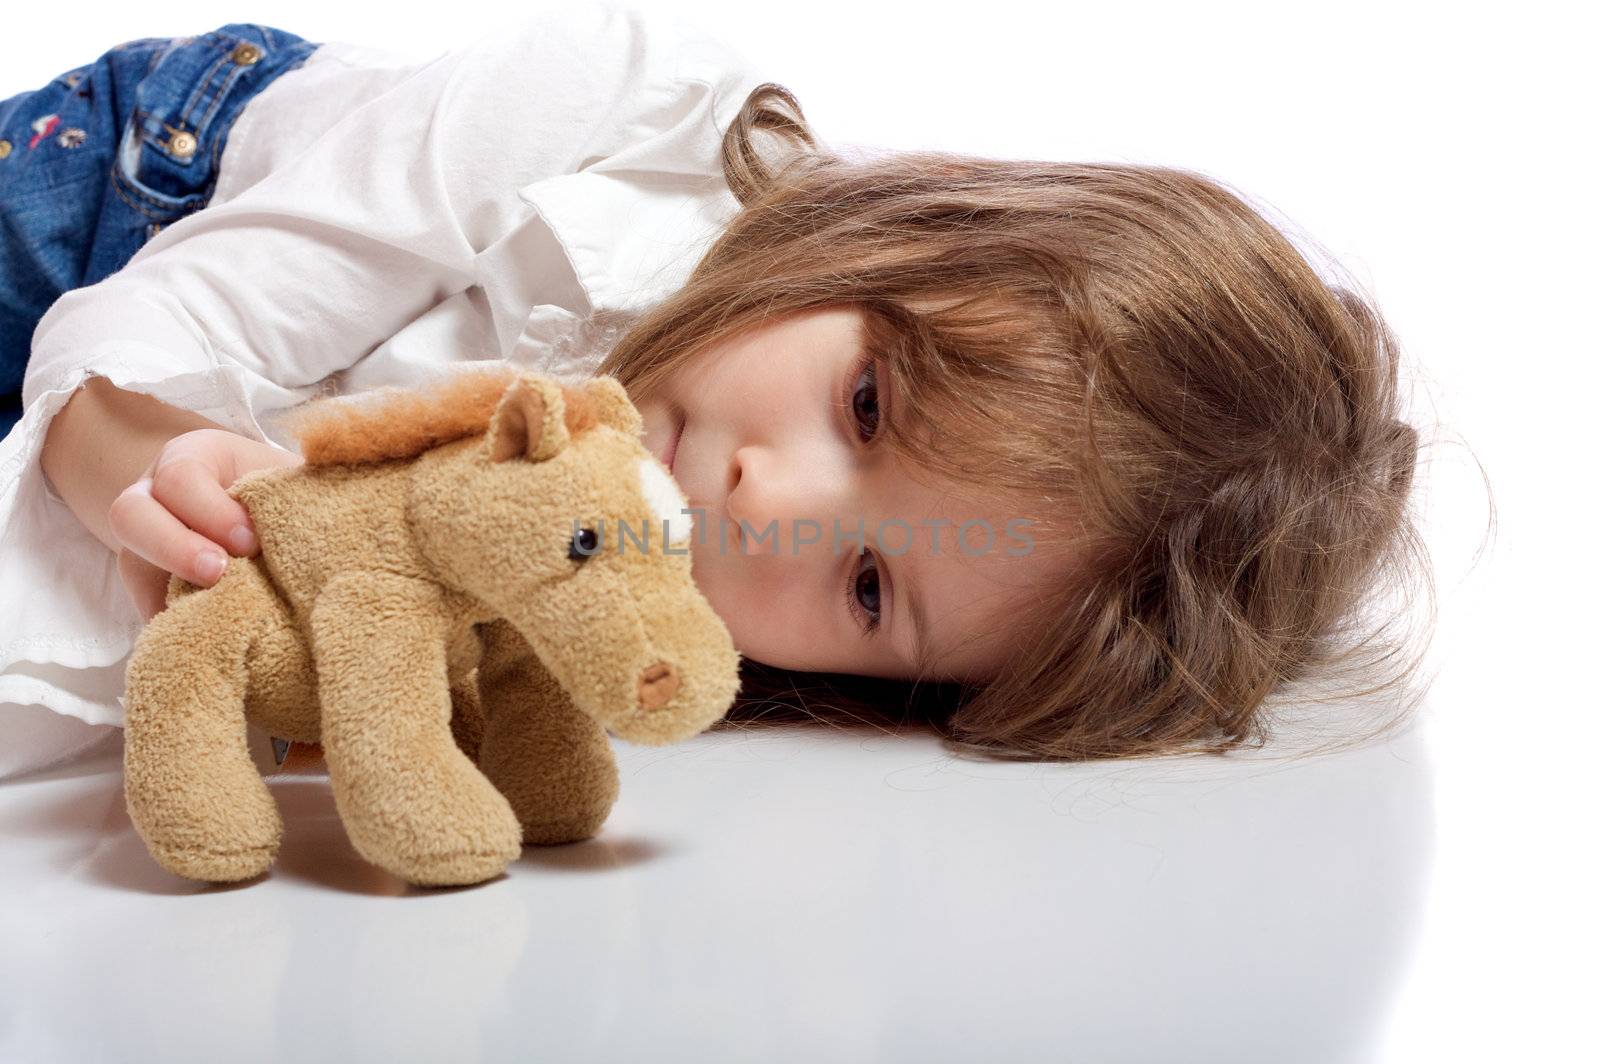 Cute little girl with a teddy